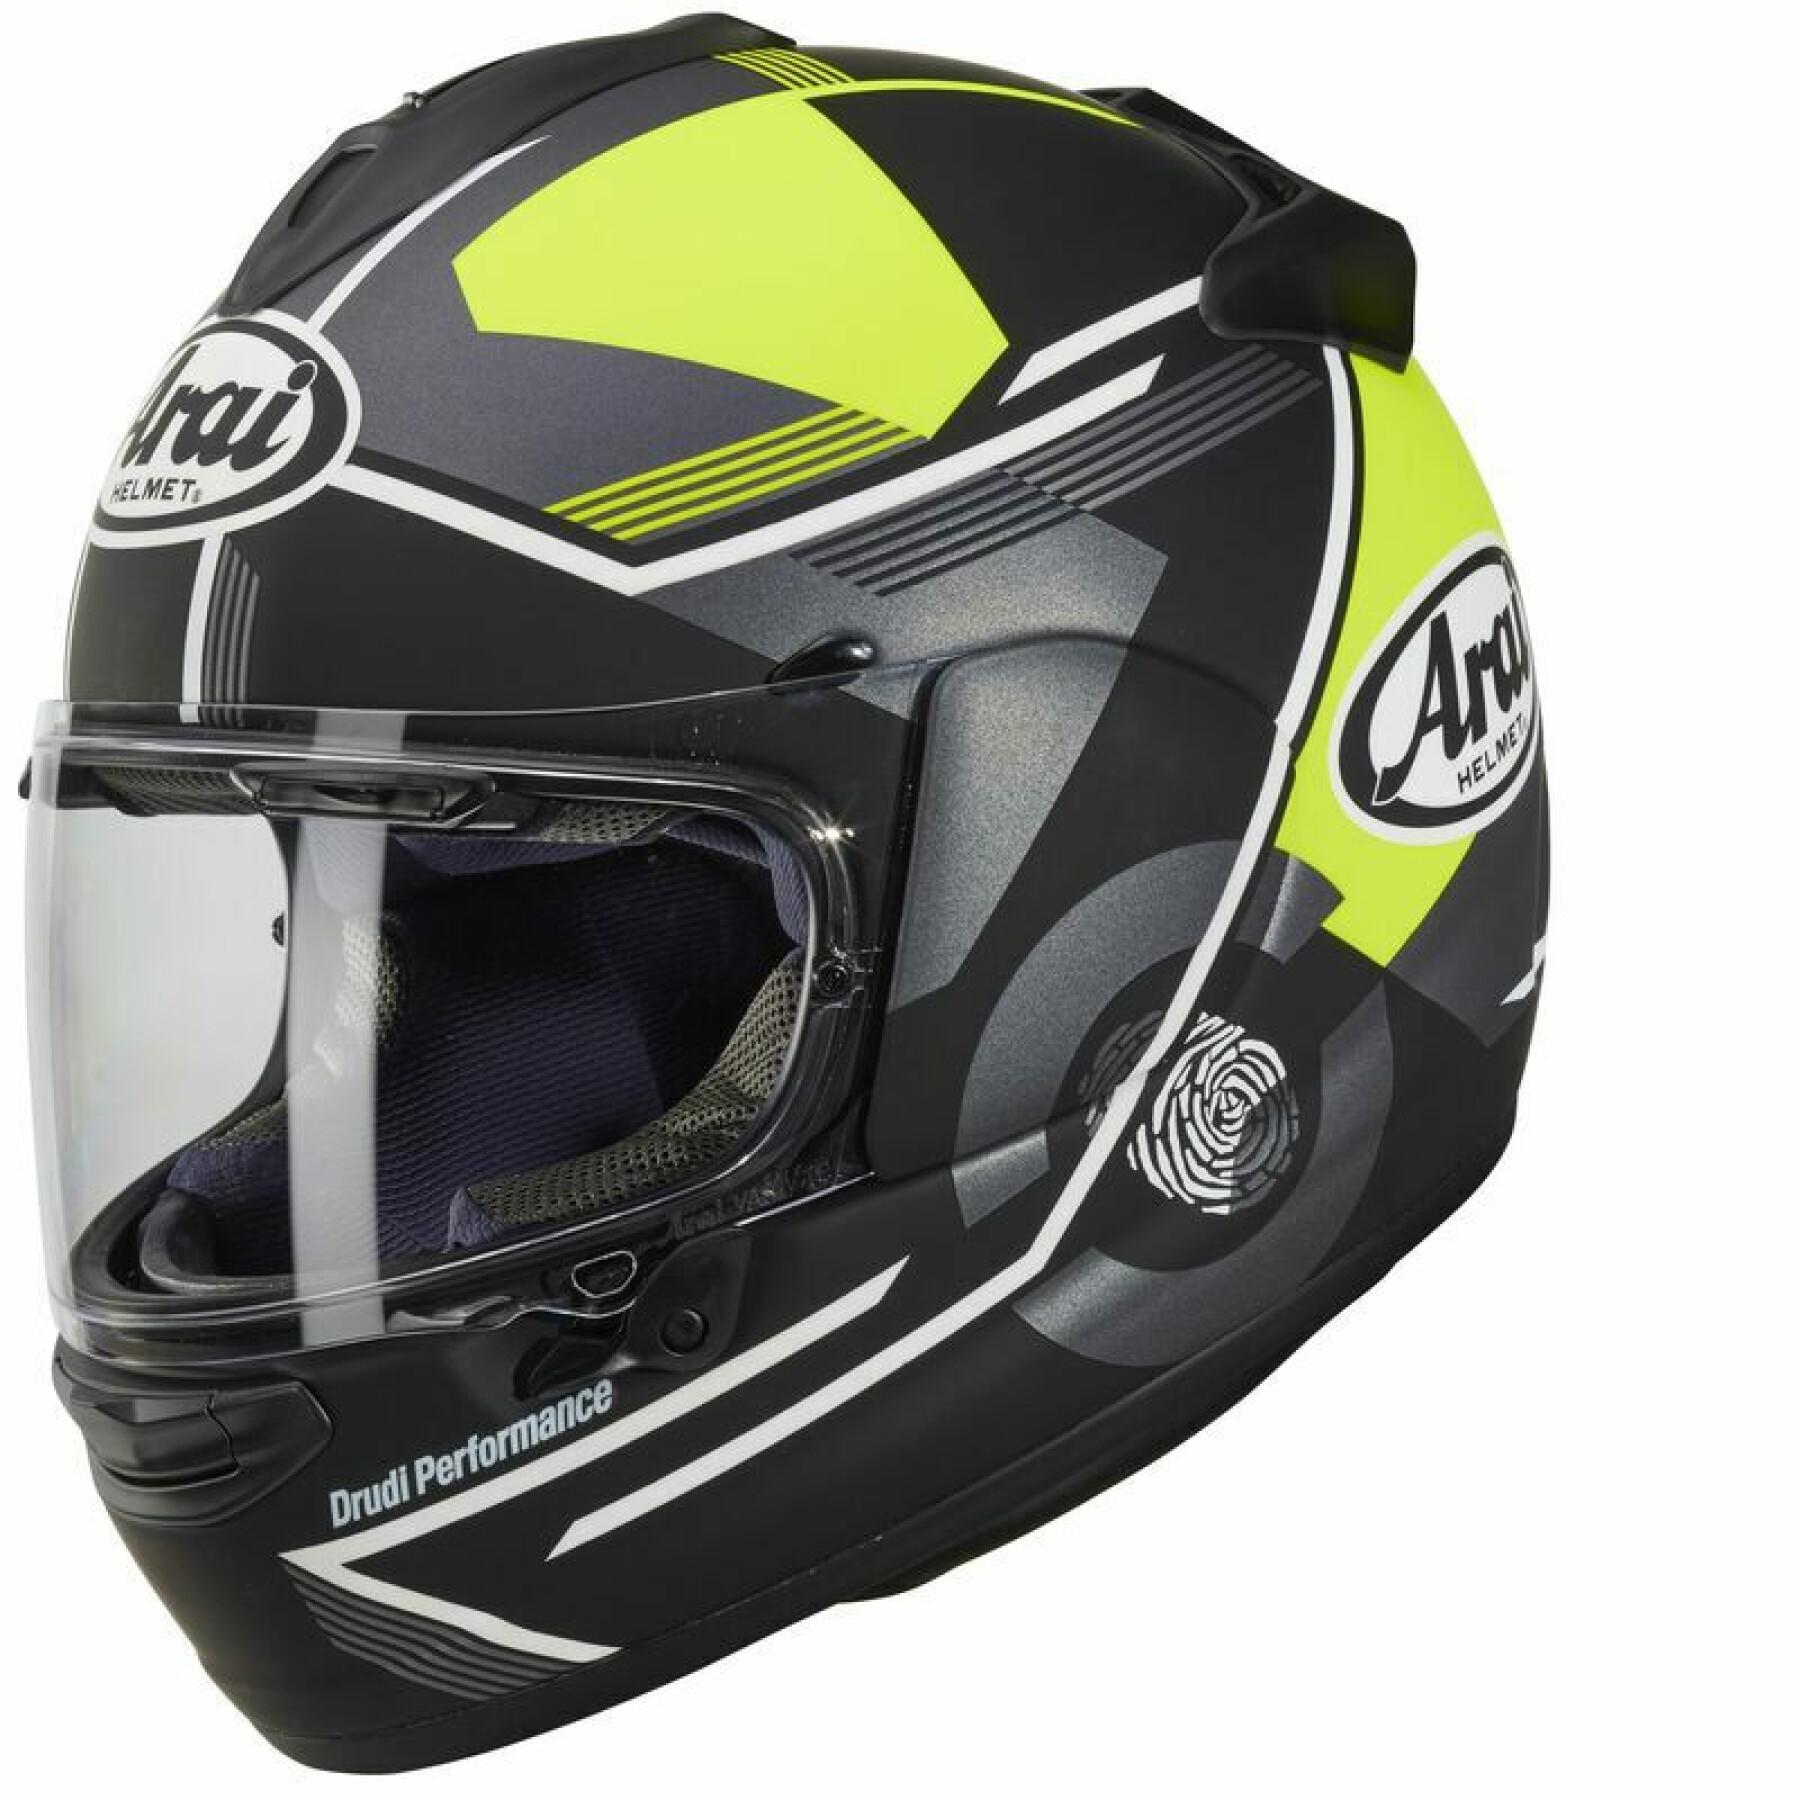 Full face motorcycle helmet Arai Chaser-X - Gene